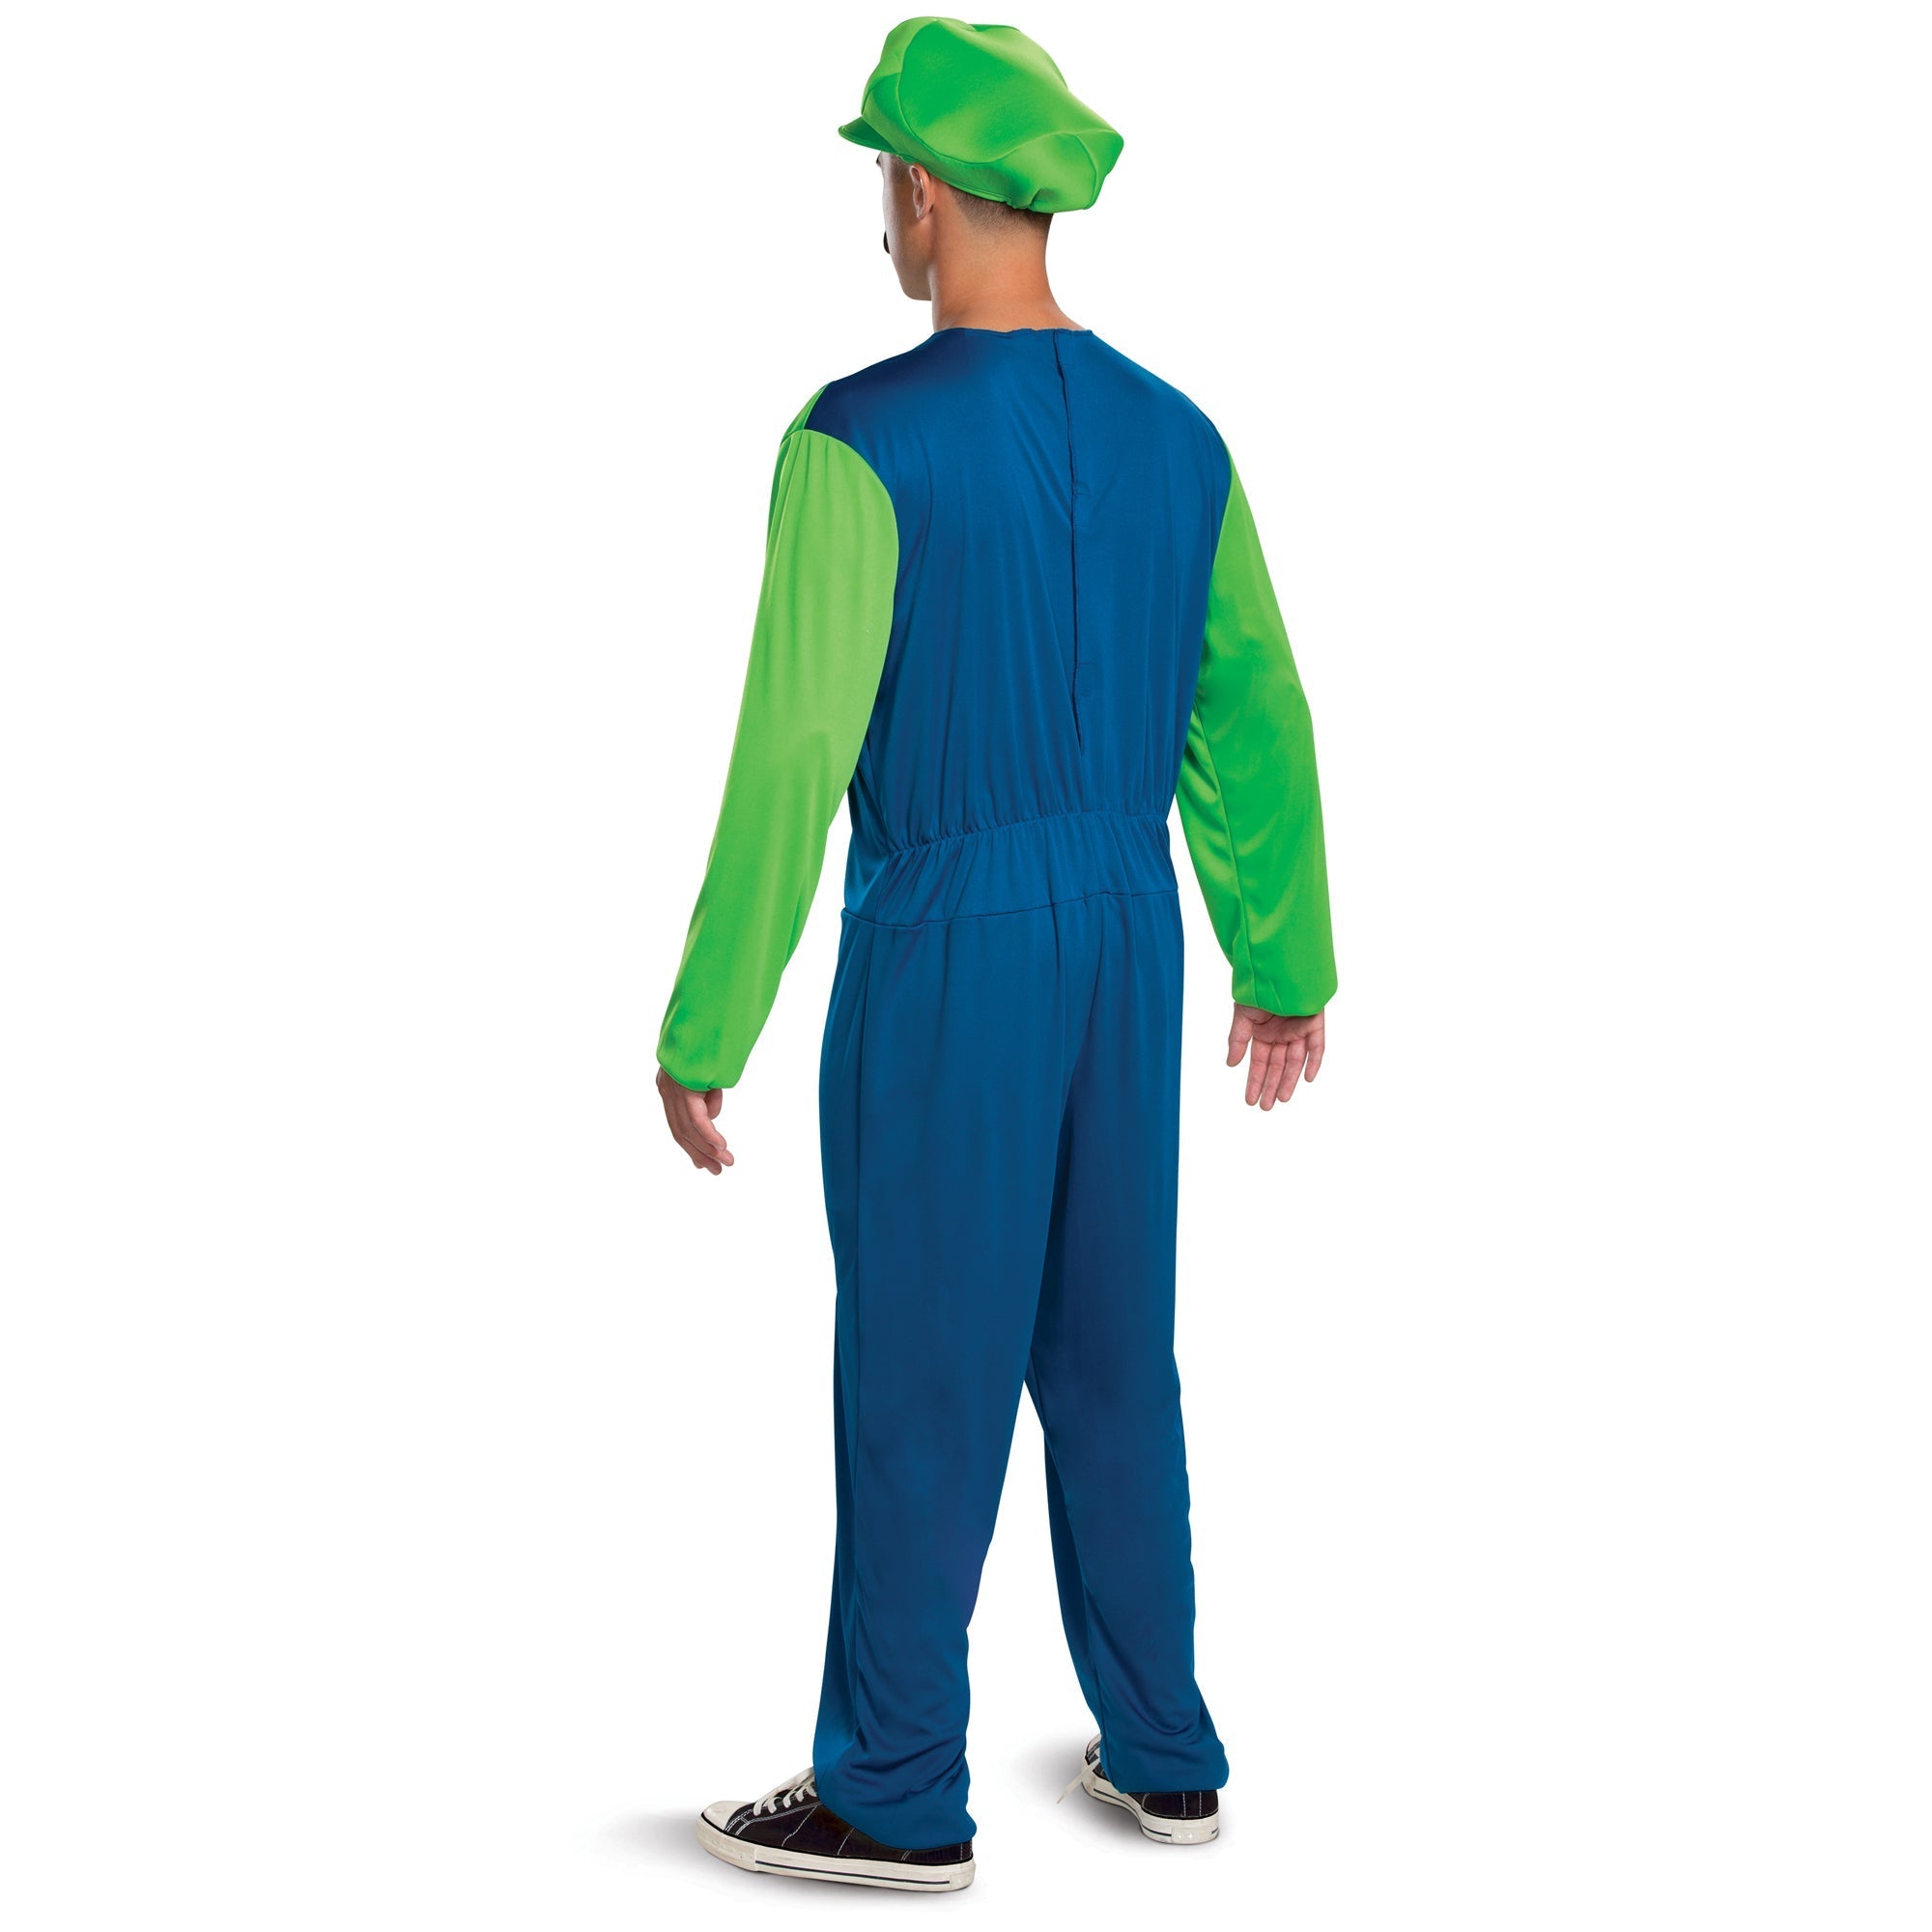 Costume de Luigi pour adultes, Super Mario Bros.